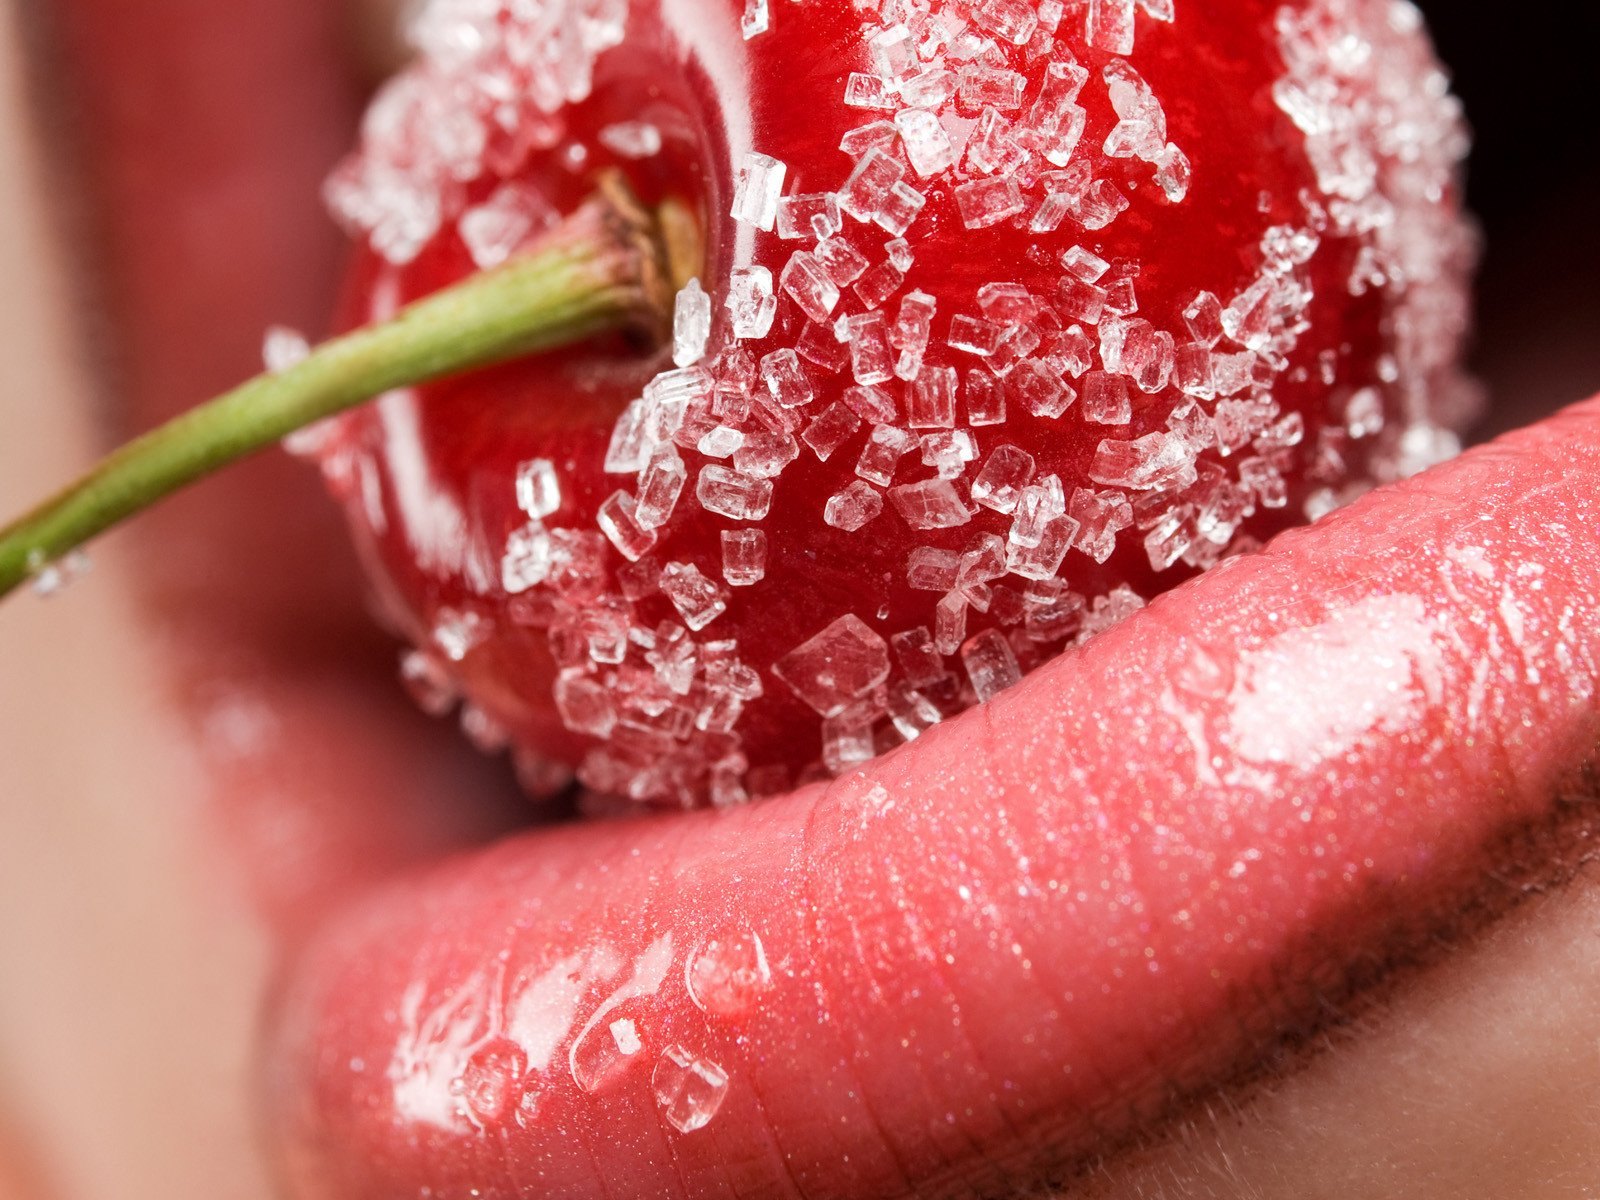 макросъемка фруктов на губах